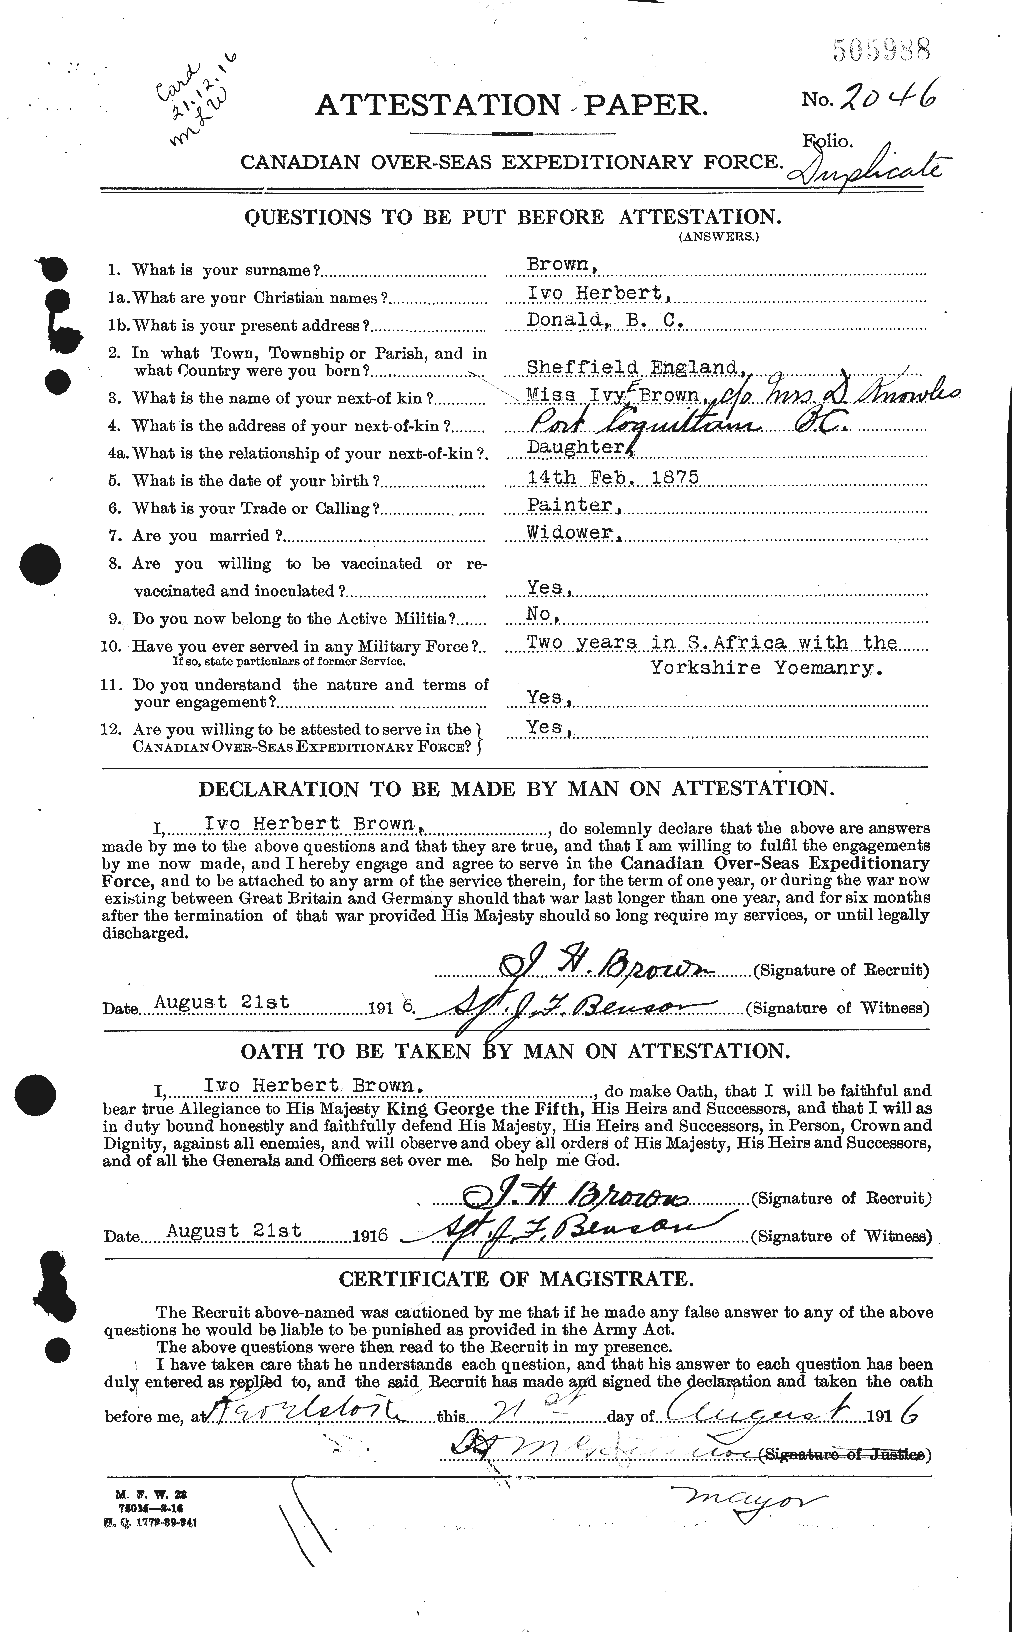 Dossiers du Personnel de la Première Guerre mondiale - CEC 265672a